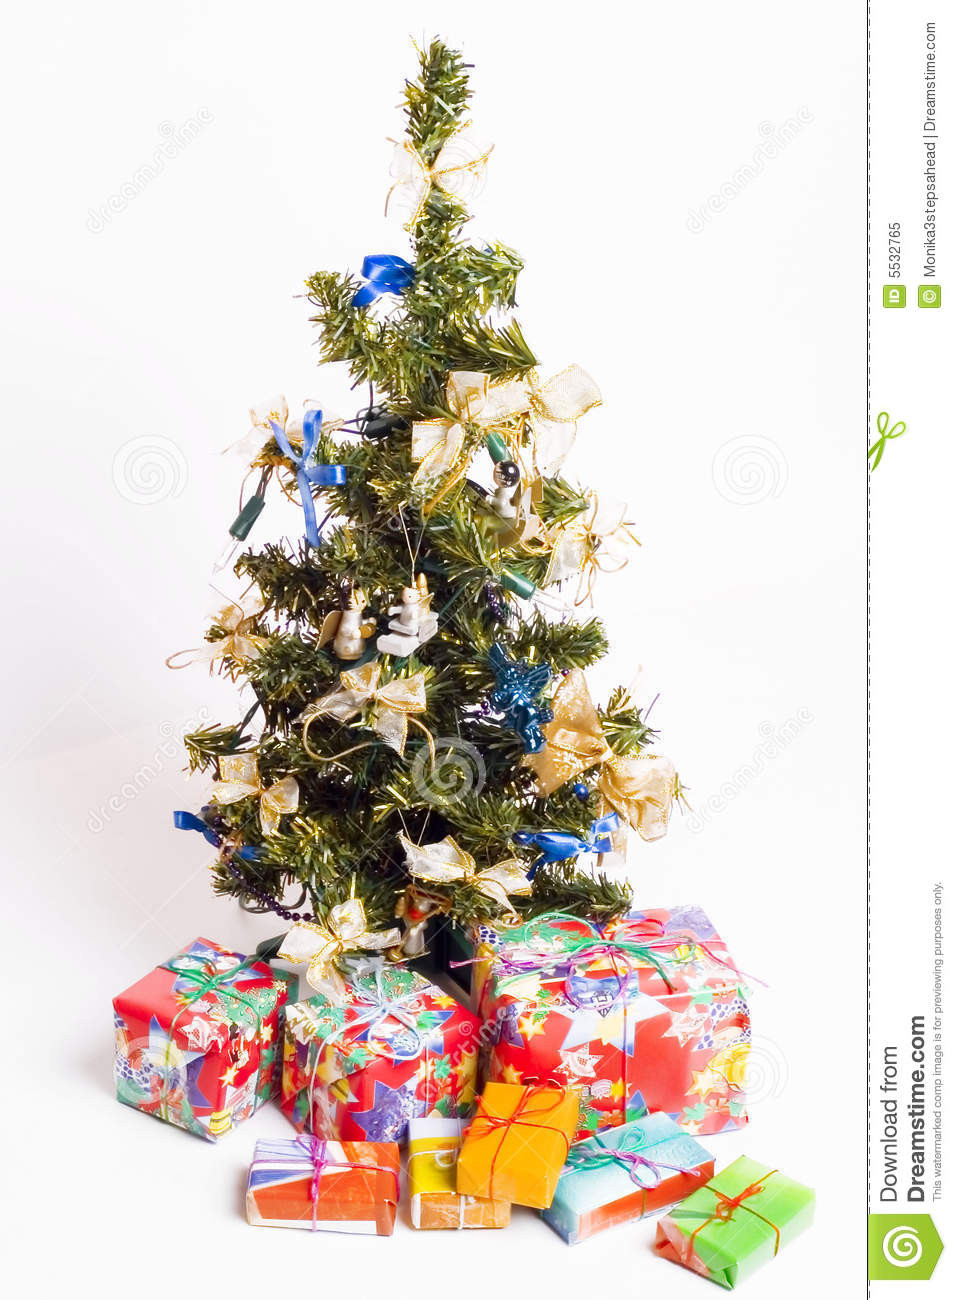 Weihnachtsbaum Geschenke
 Weihnachtsbaum Und Geschenke Lizenzfreies Stockfoto Bild